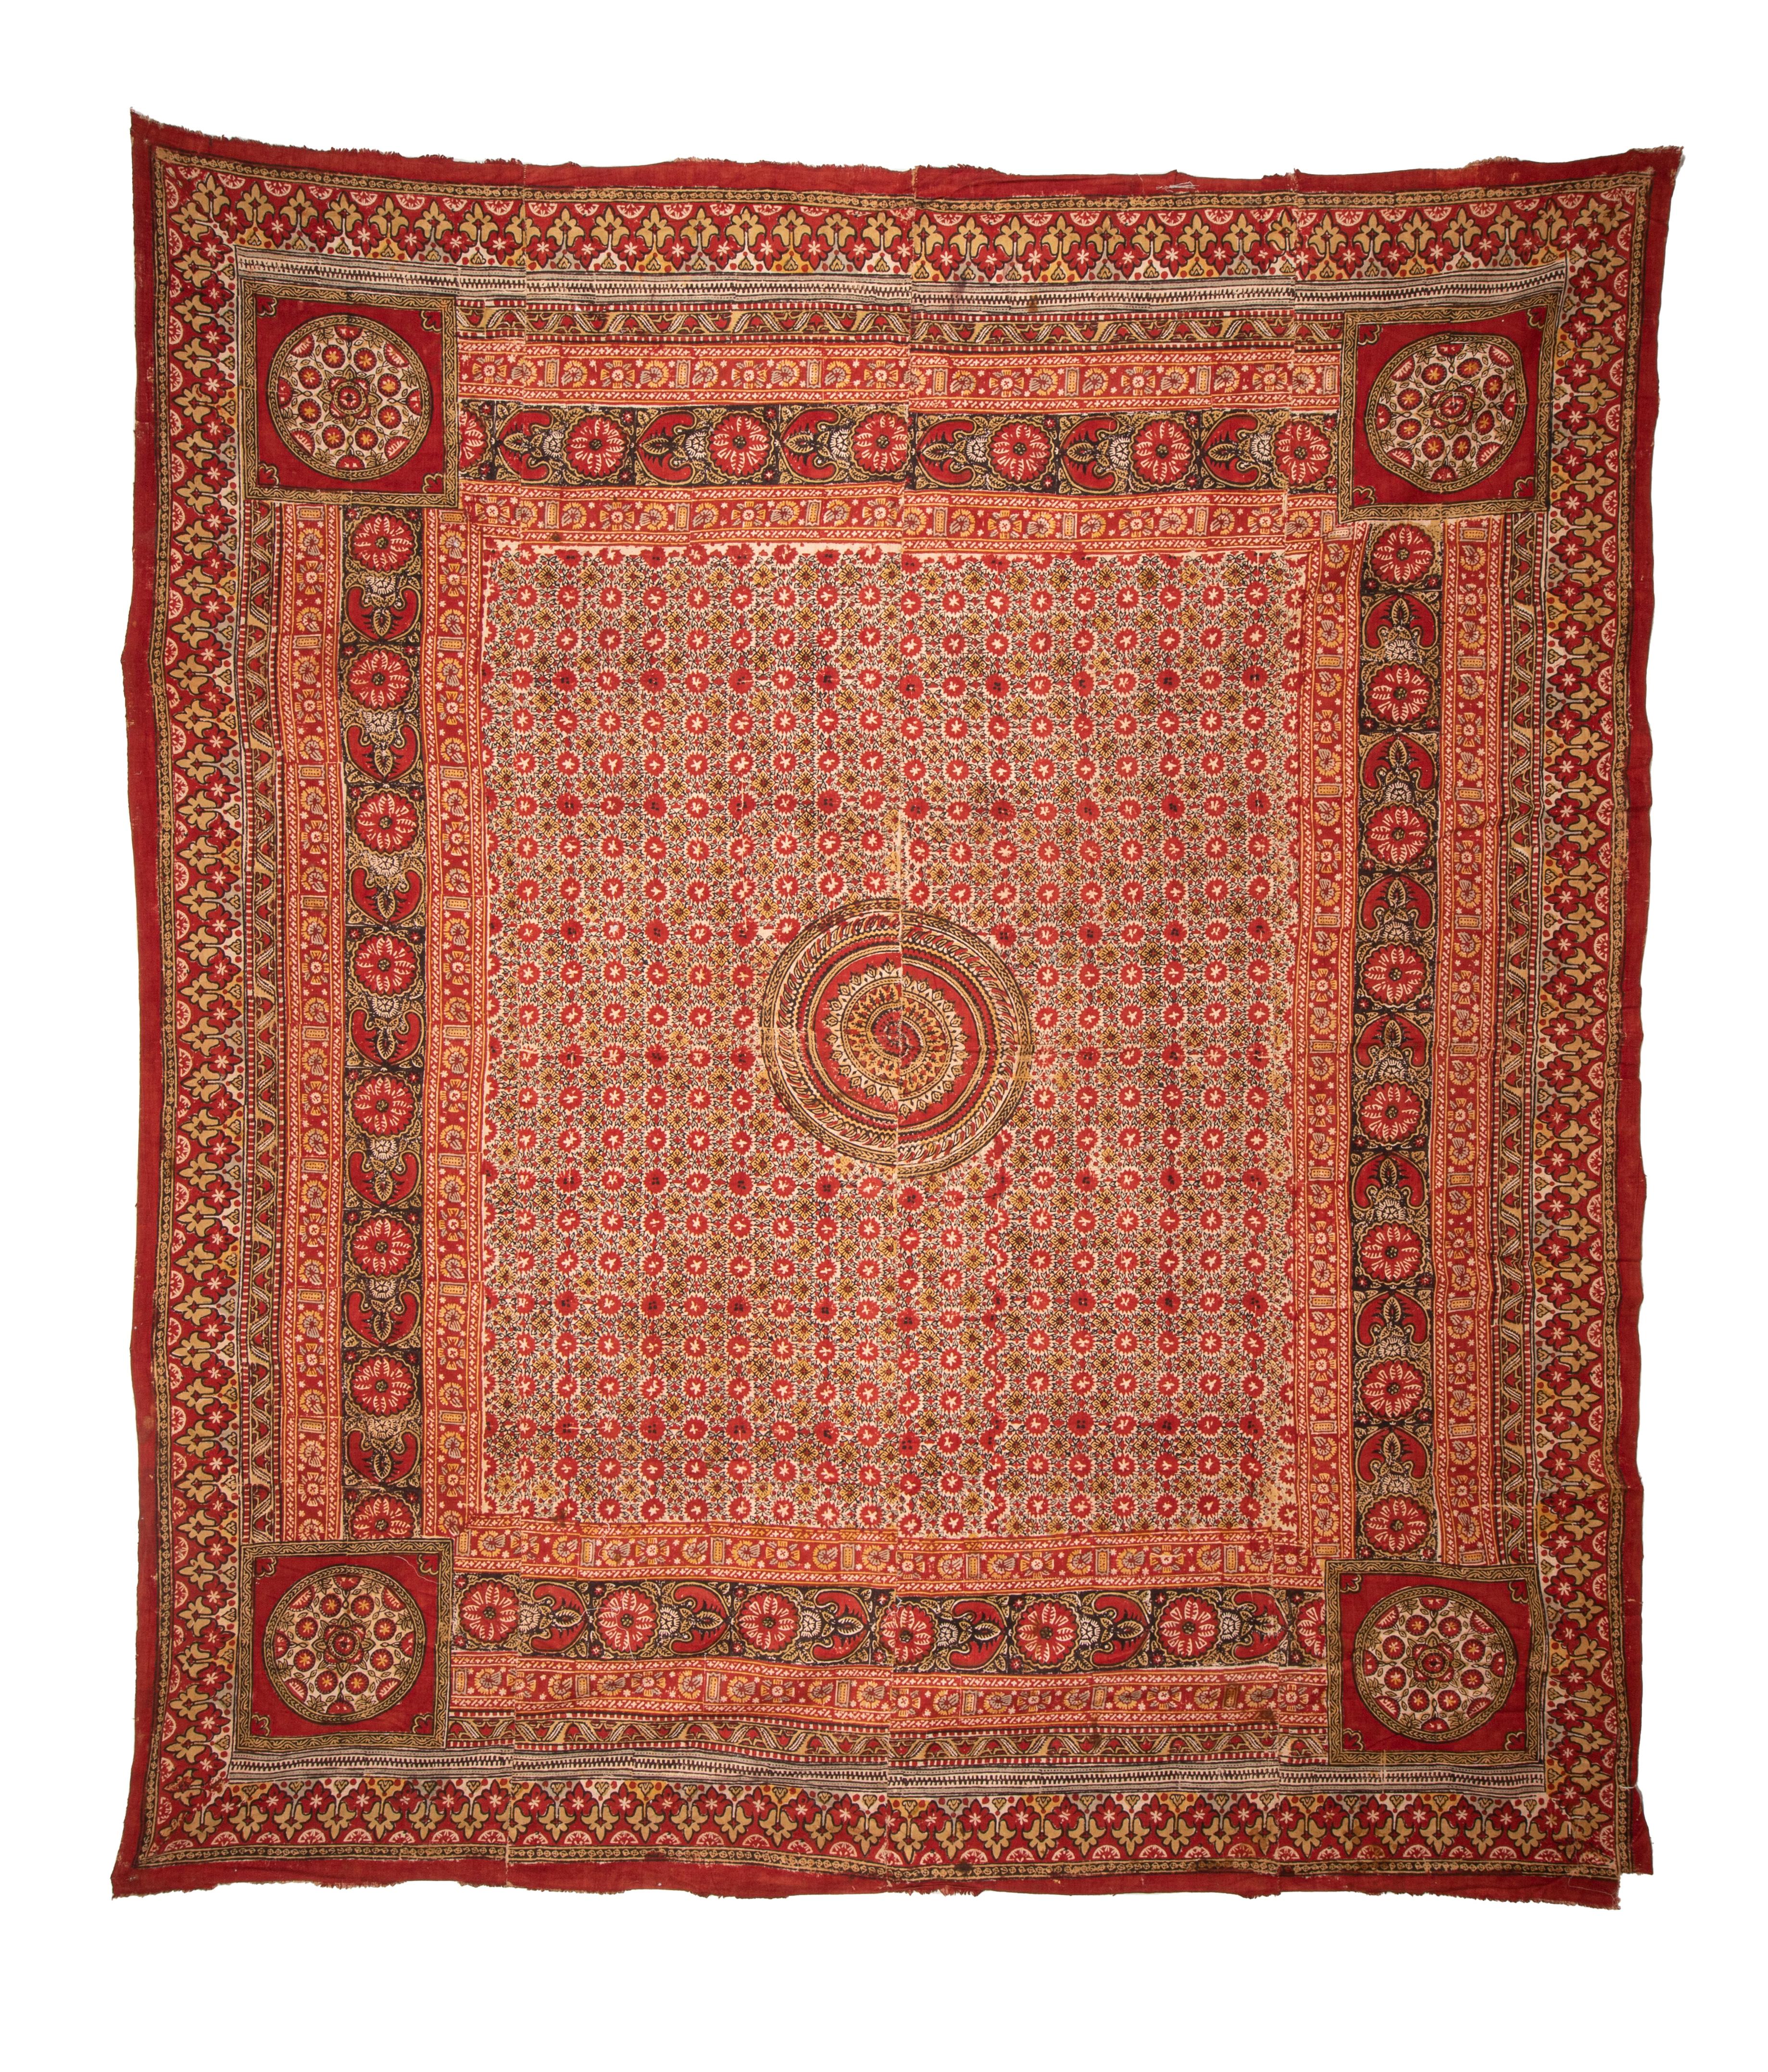 L'impression au tampon ouzbek est une technique ancienne qui consiste à décorer un textile à l'aide de blocs de bois, sur un tissu de coton épais principalement tissé à la main.
Le nom local de ces textiles est 